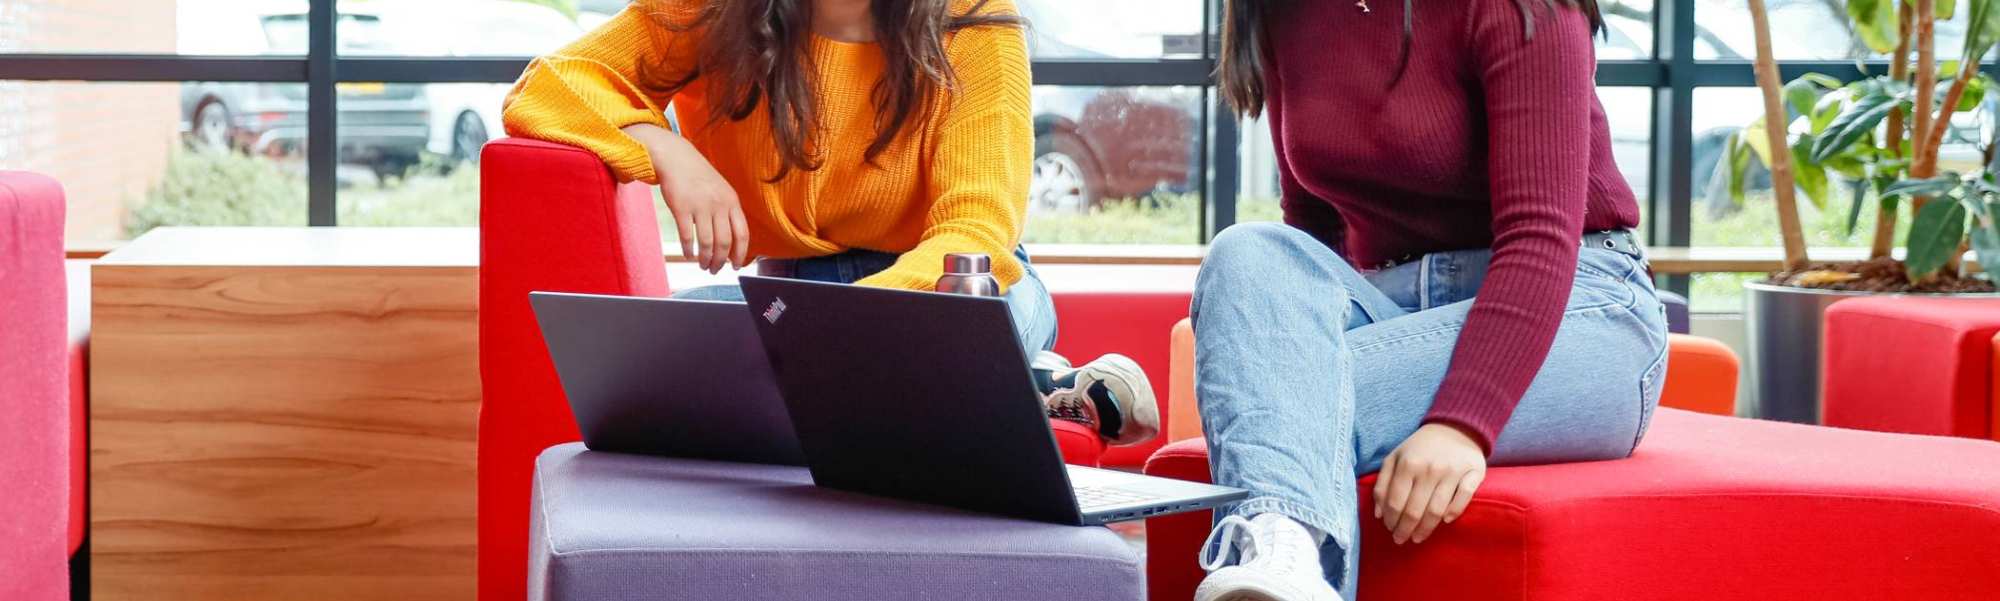 Twee internationael studenten overleggen met laptop bij rode banken